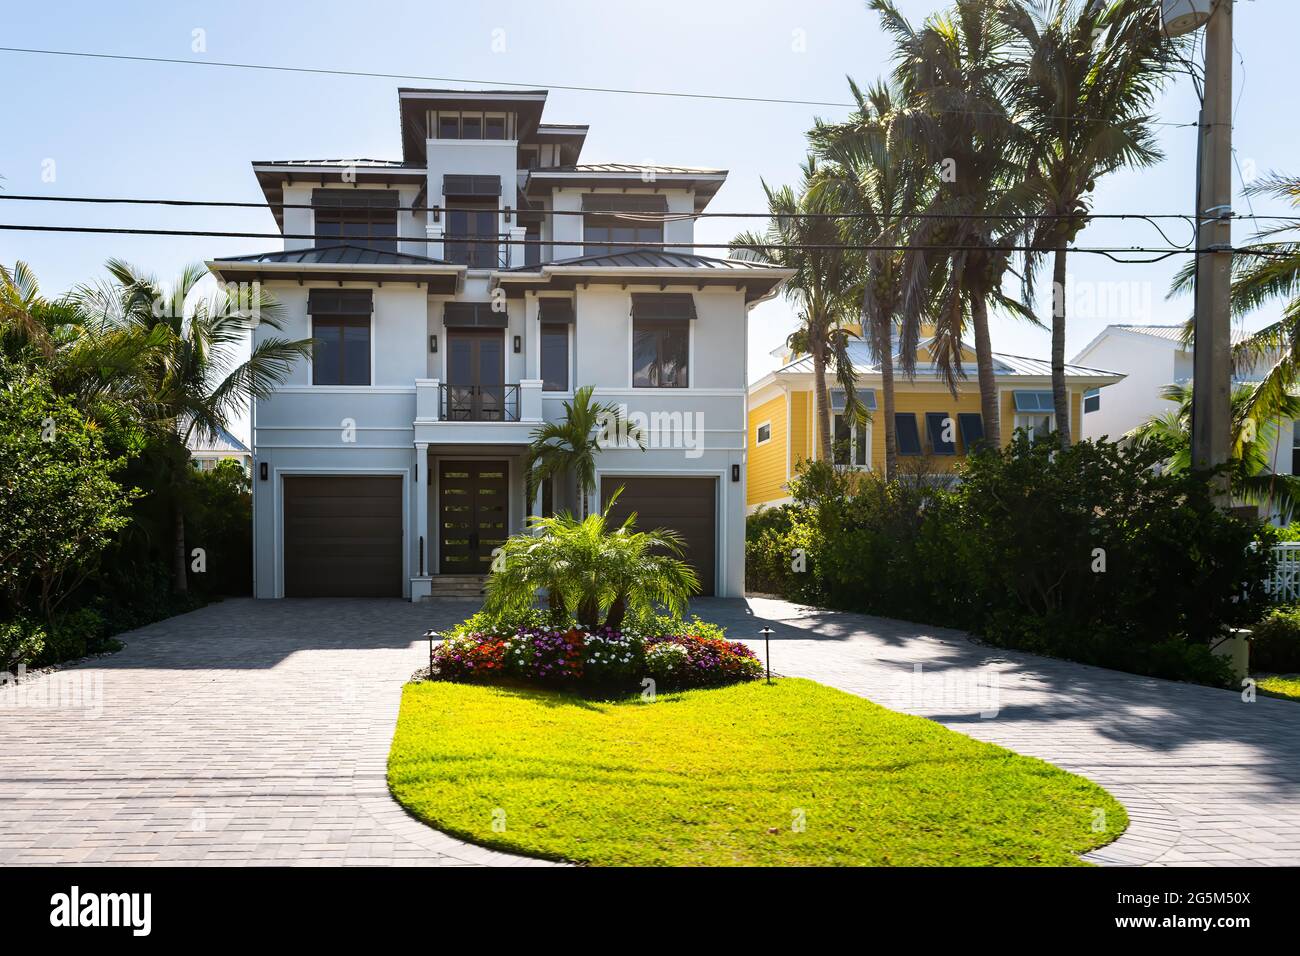 Bonita Springs, il golfo della Florida della costa del messico con ville di lusso casa edifici lungomare architettura dipinta colorata e garage Foto Stock